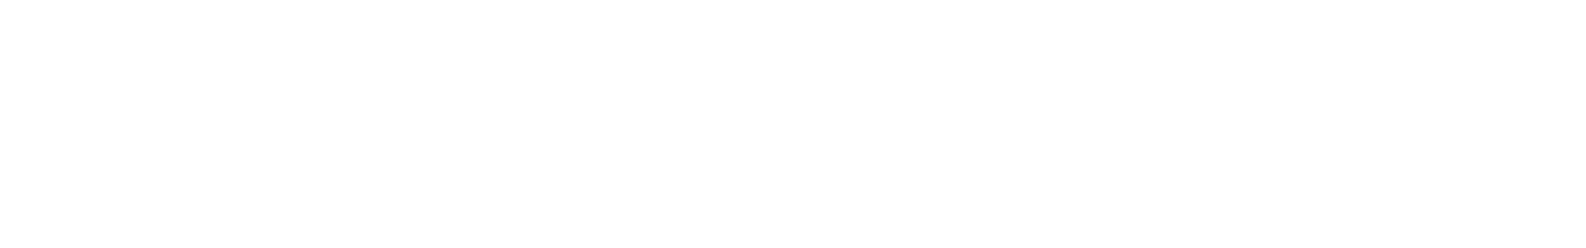 Air New Zealand
 logo grand pour les fonds sombres (PNG transparent)